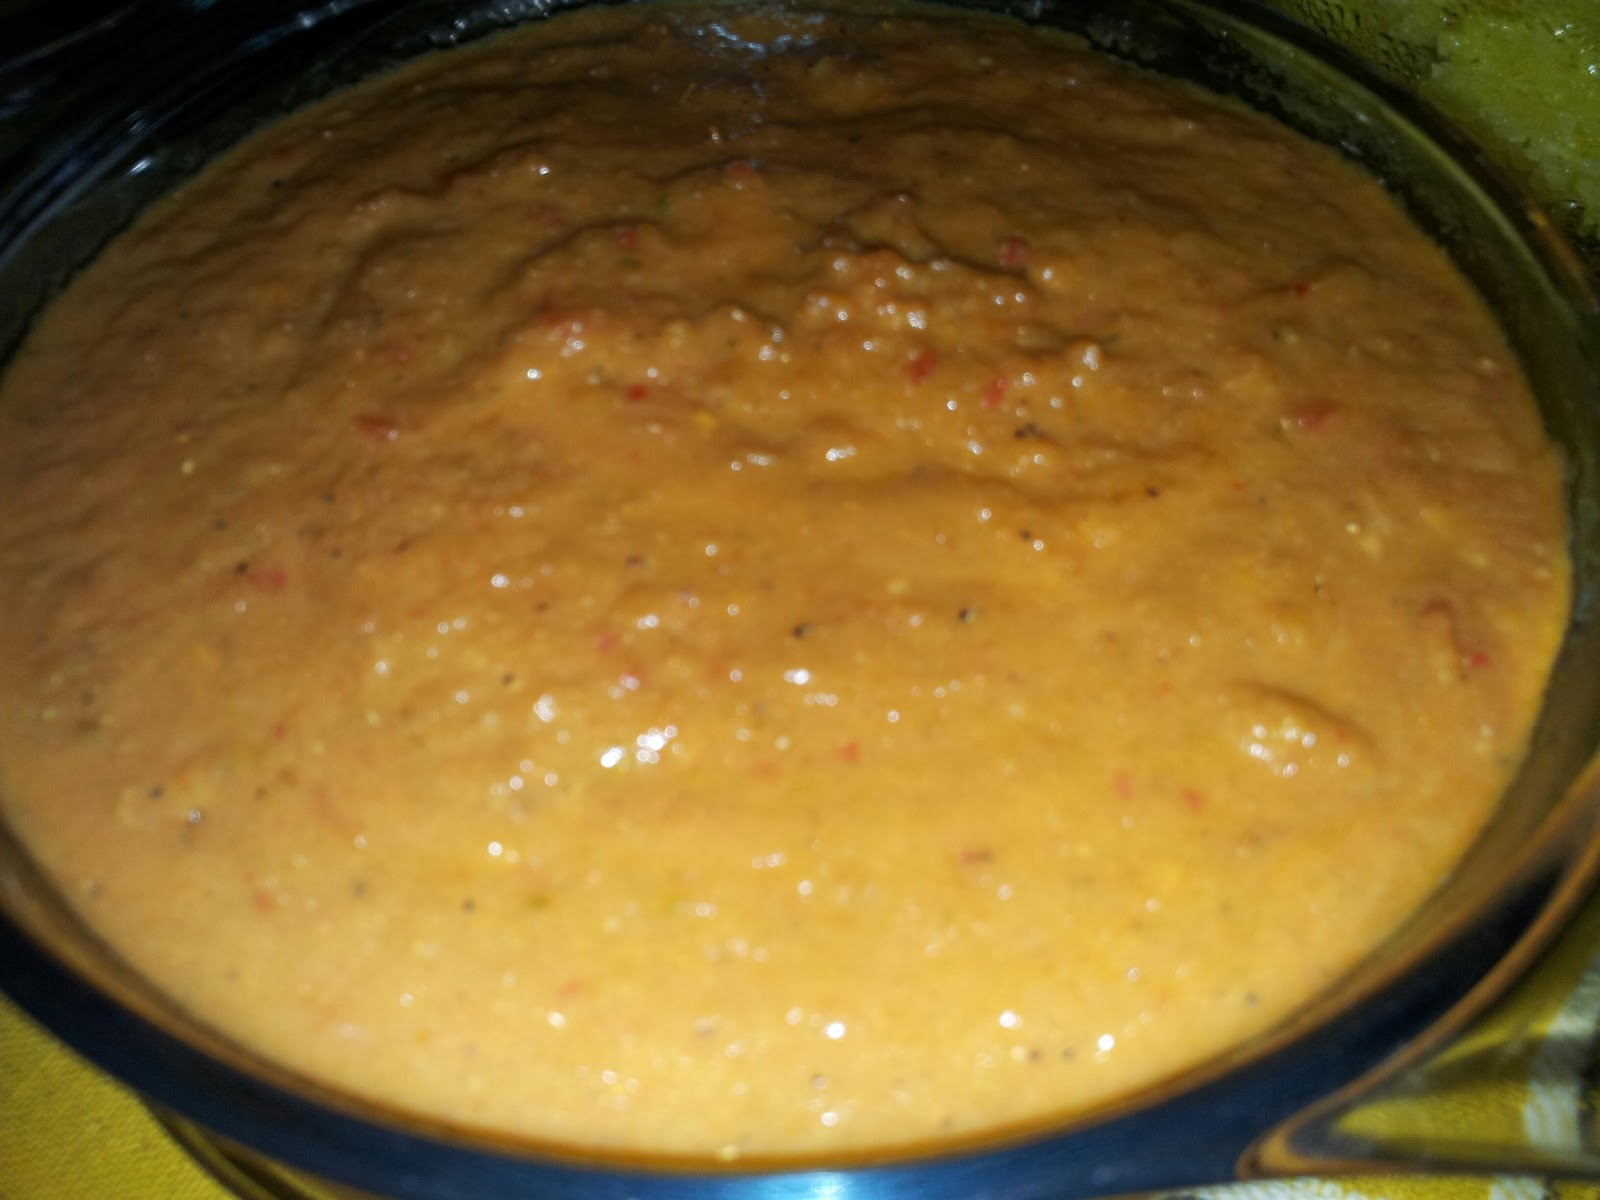 ZULFAZA LOVES COOKING: Resepi nasi ayam penyet dan sambal 